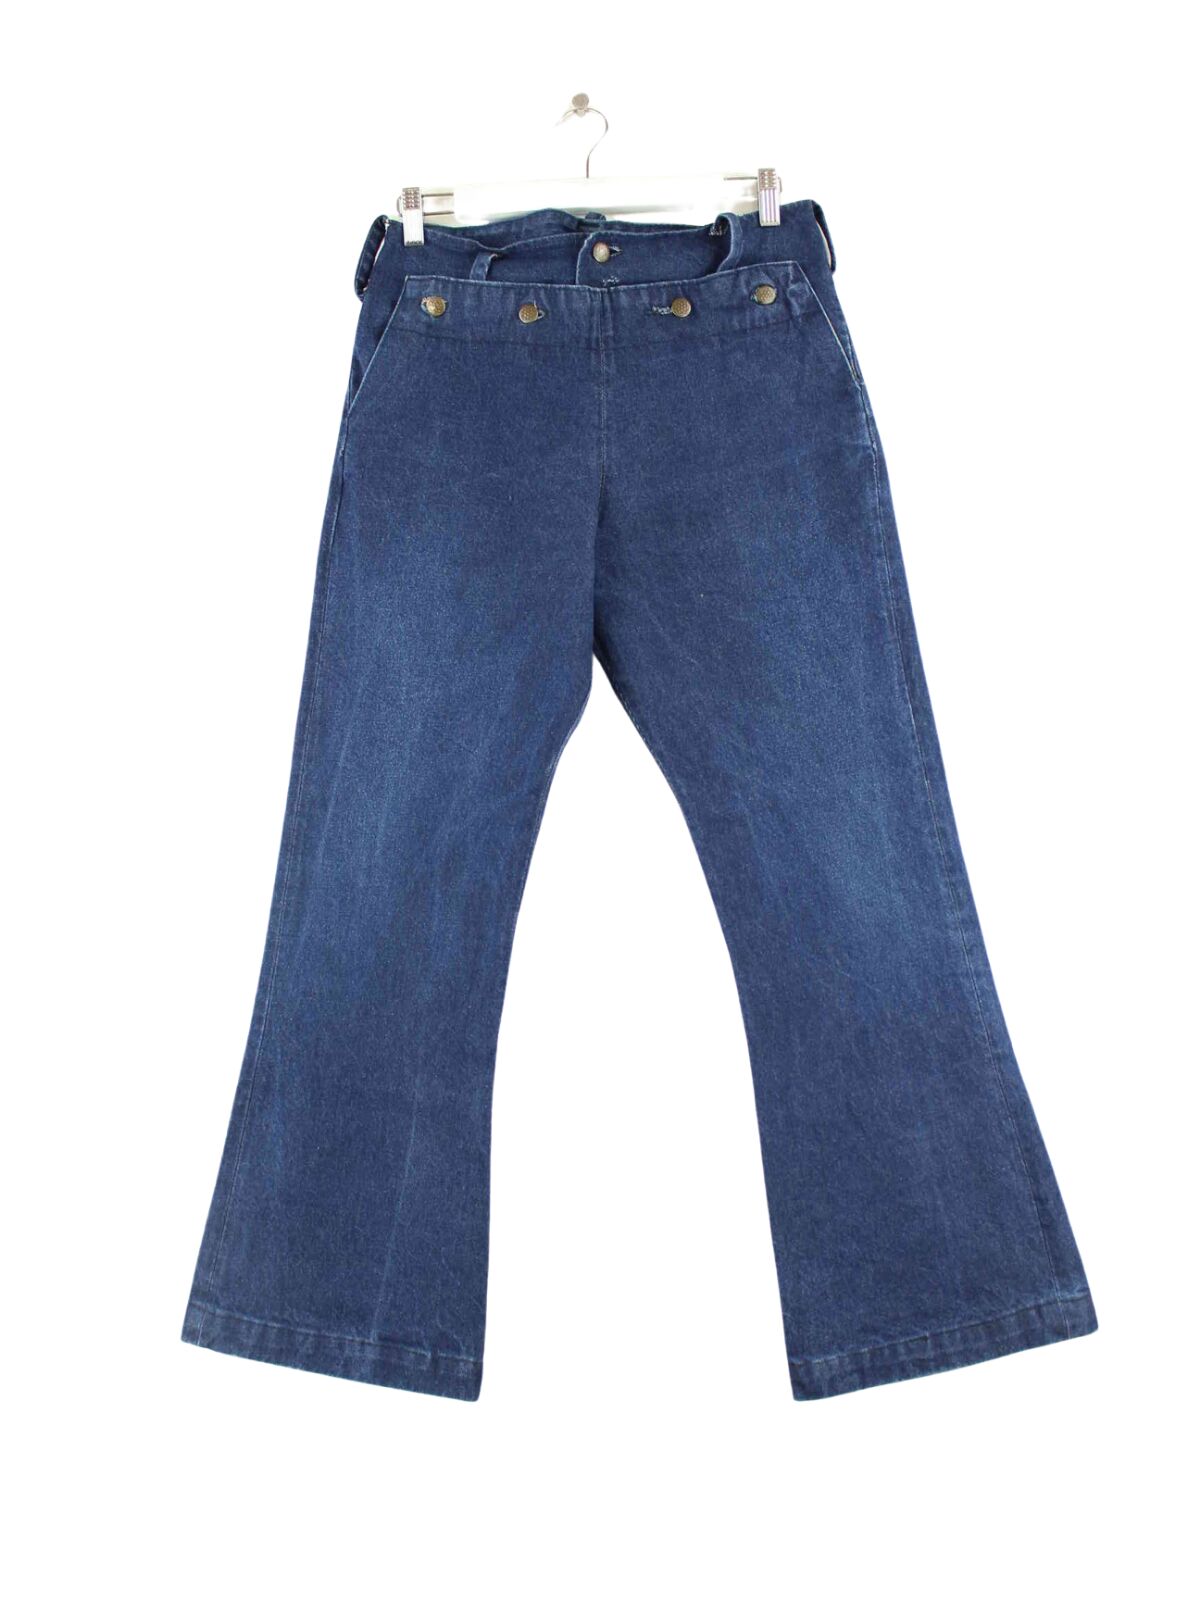 Vintage Damen 80s Jeans Blau W28 L30 (front image)